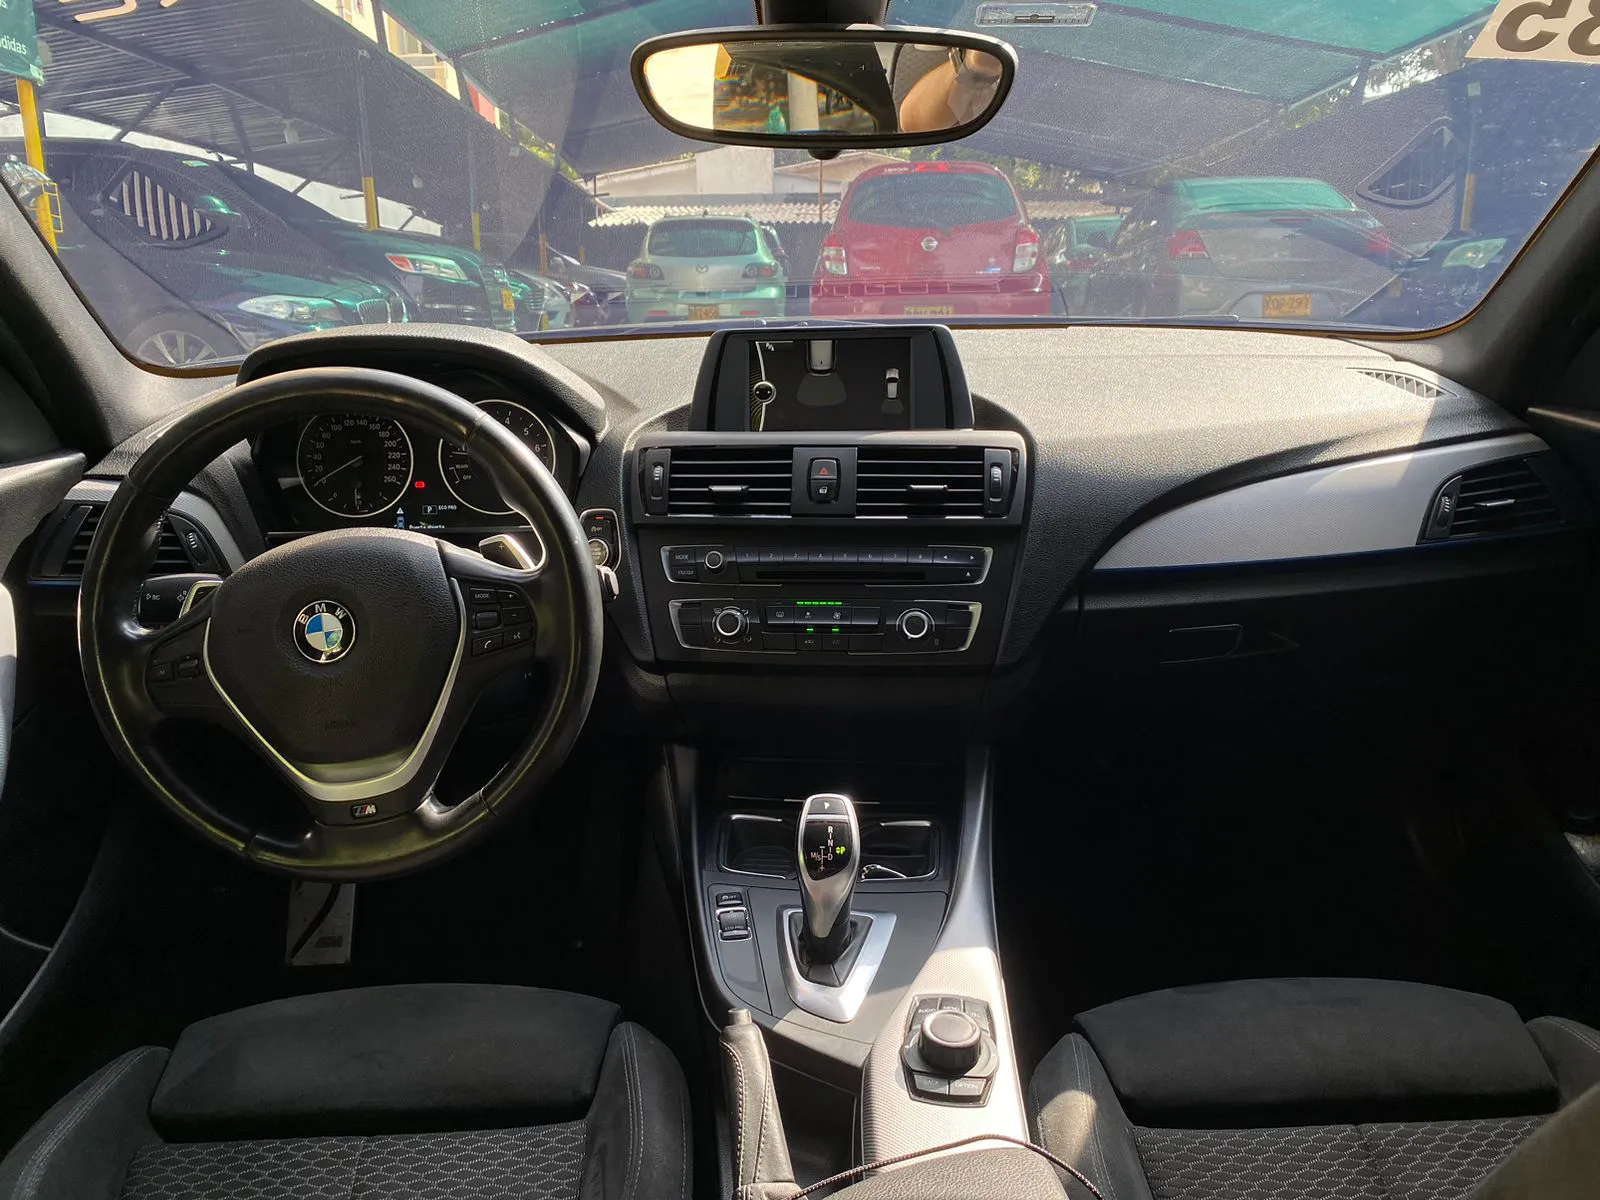 BMW CARROS M135i F20 2014